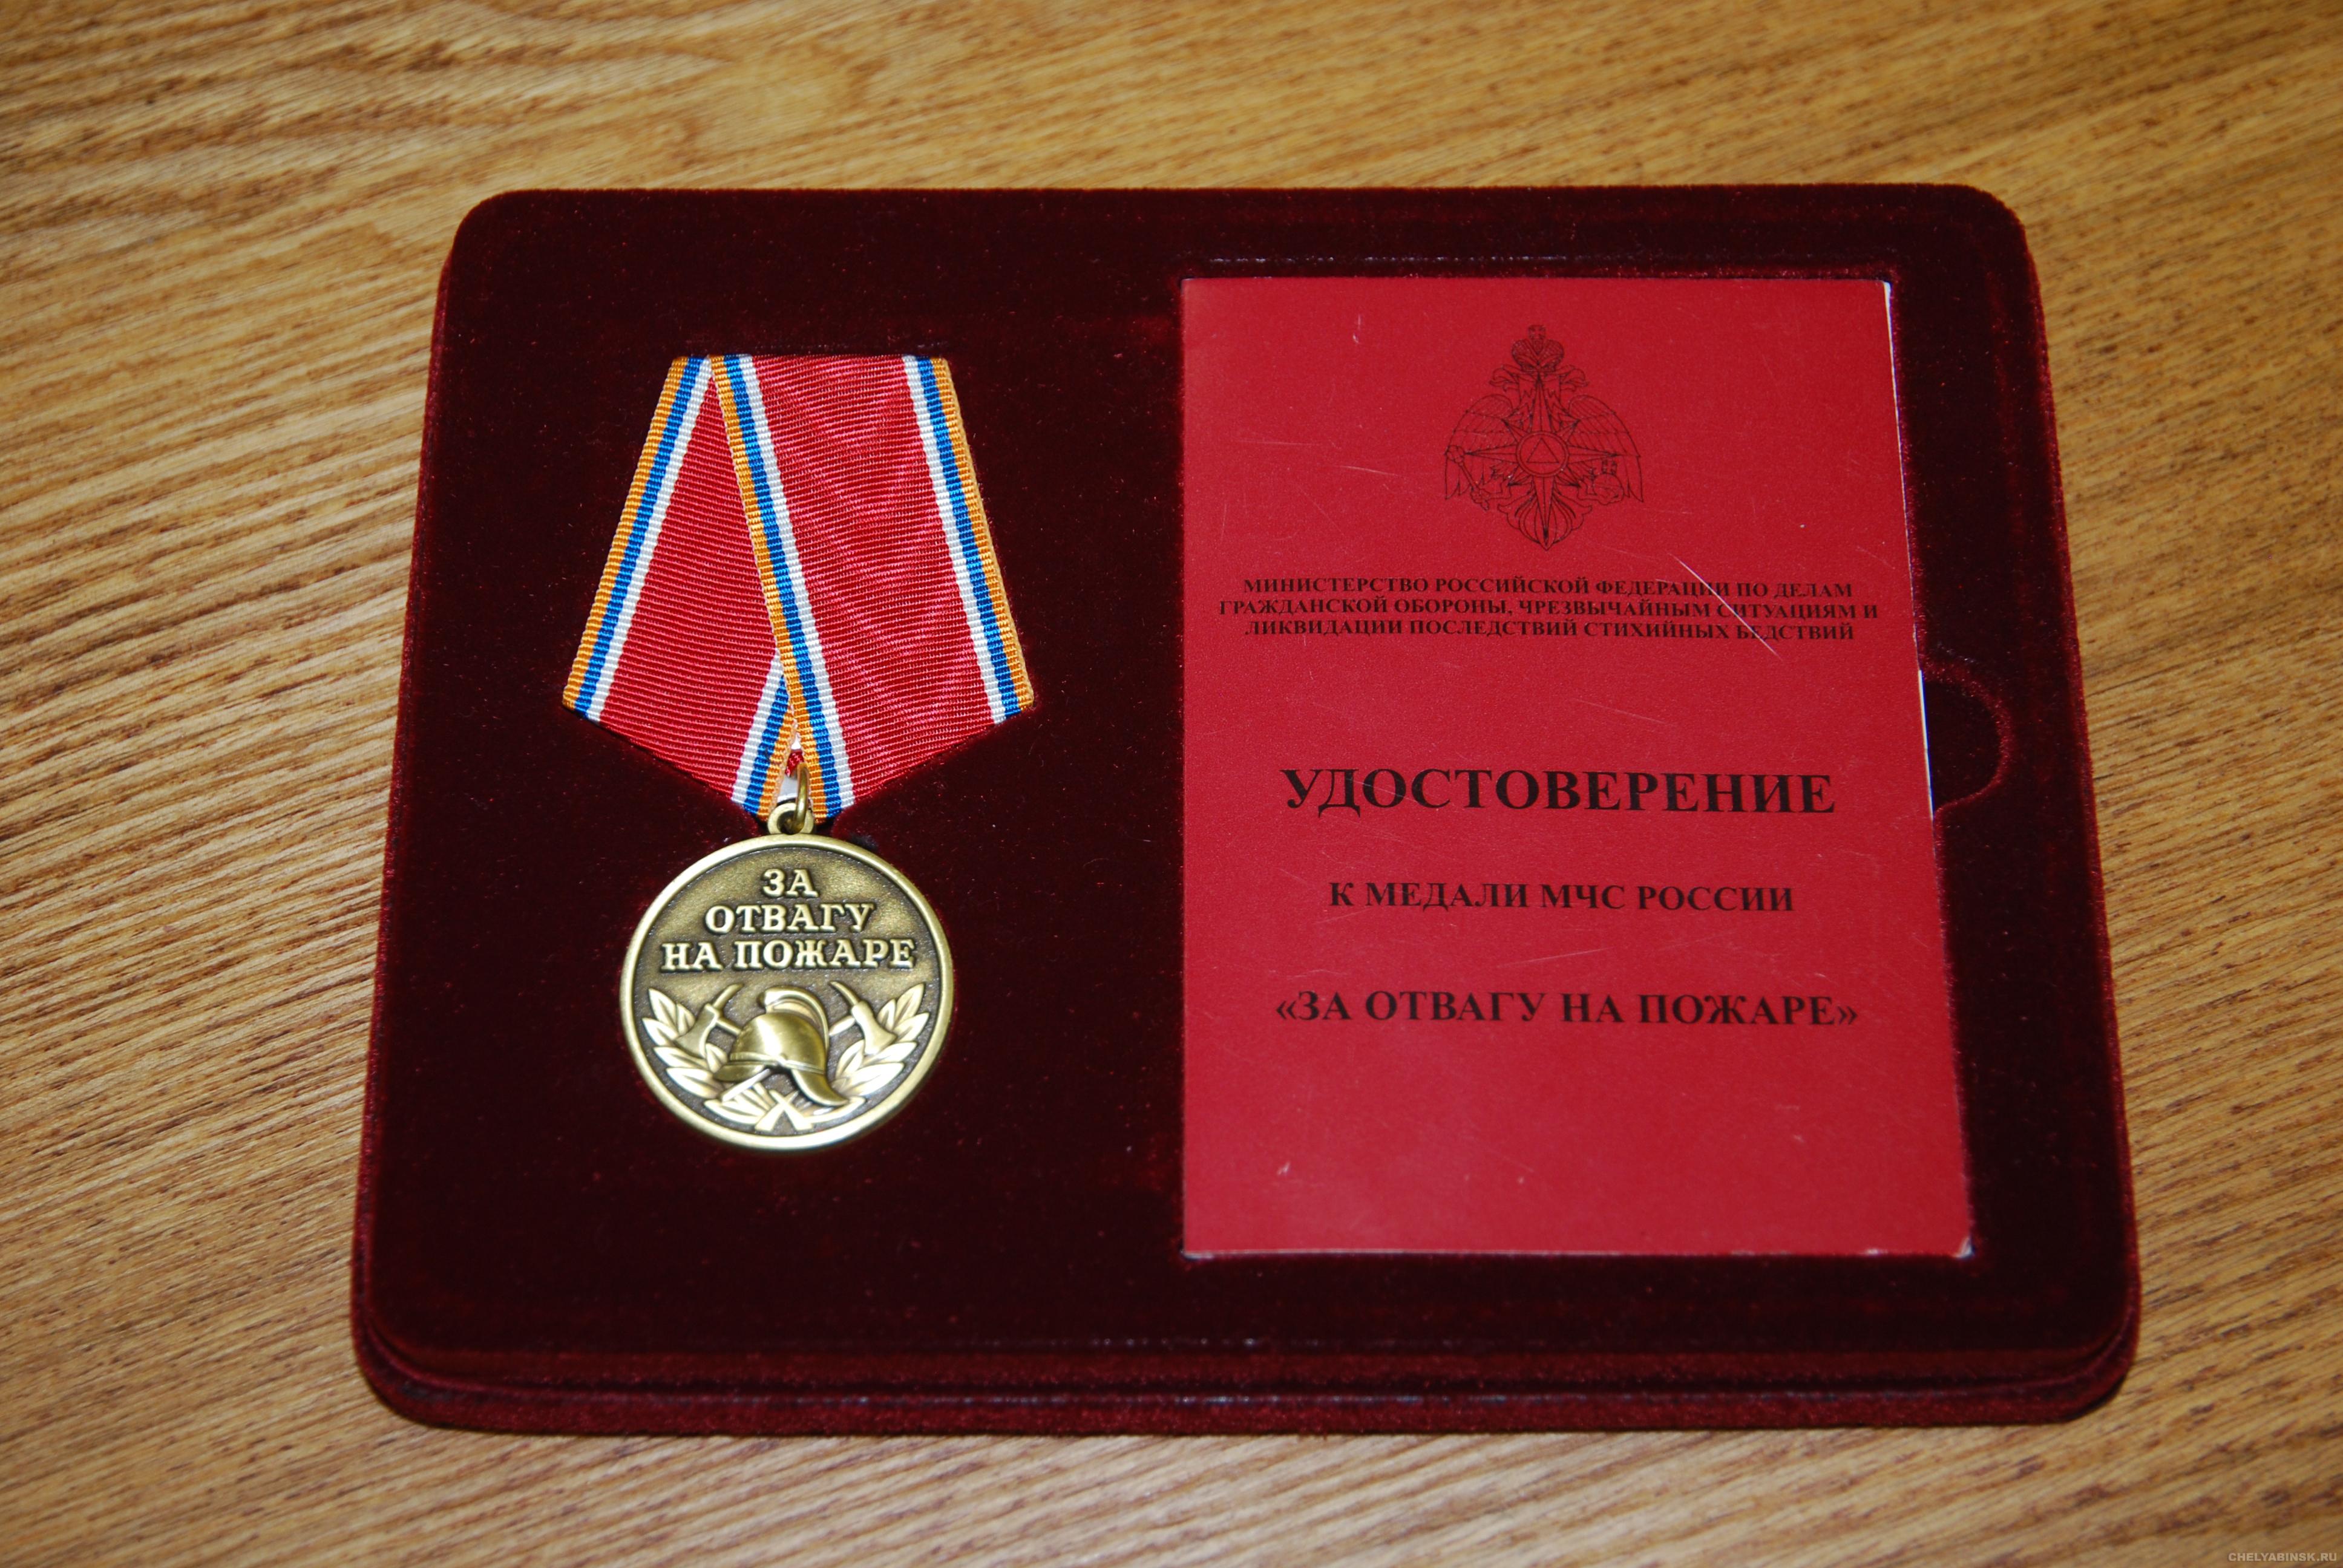 Какая награда вручается. Медаль за отвагу на пожаре МЧС России. Медаль МЧС России за спасение на пожаре. Медаль за отвагу на пожаре МВД. Меда́ль «за отва́гу на пожа́ре» РФ.